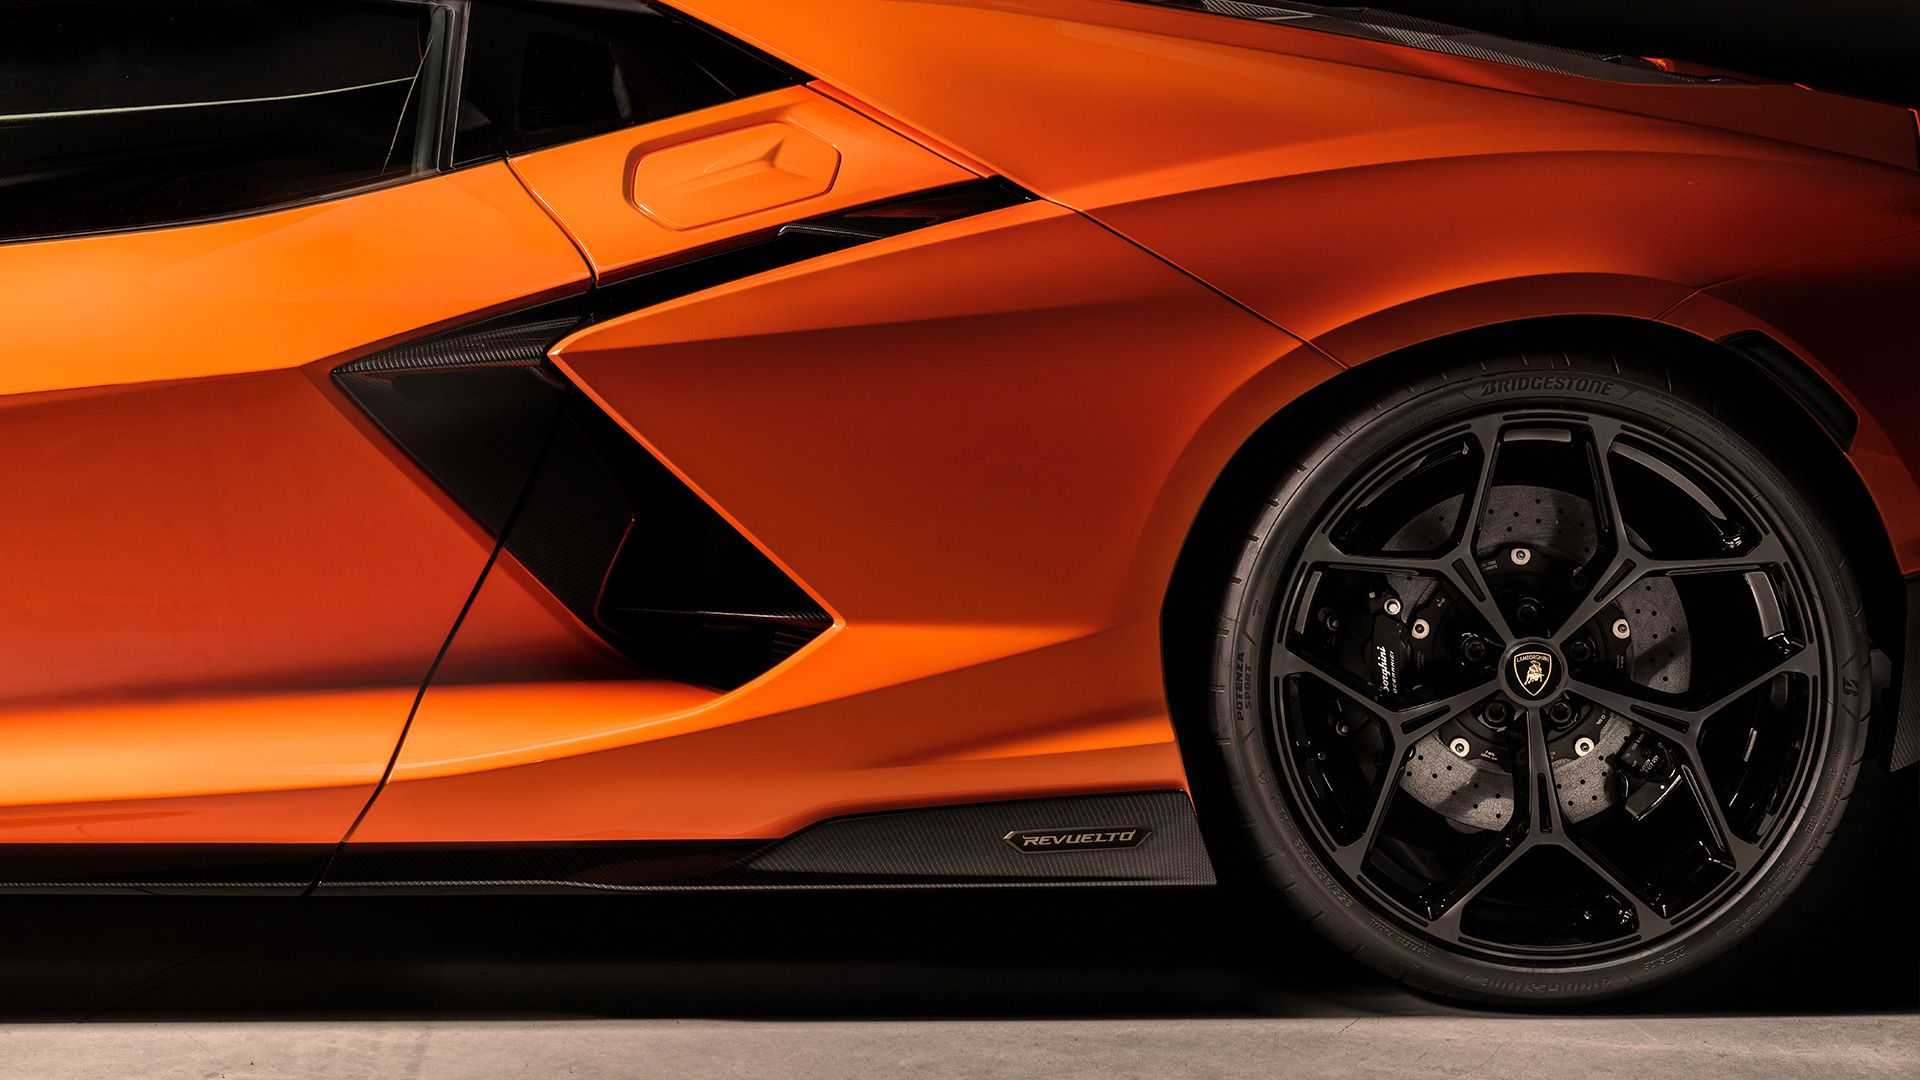 La nuova tecnologia Active Toe e Camber di Lamborghini rappresenta un grande passo avanti per le auto ad alte prestazioni